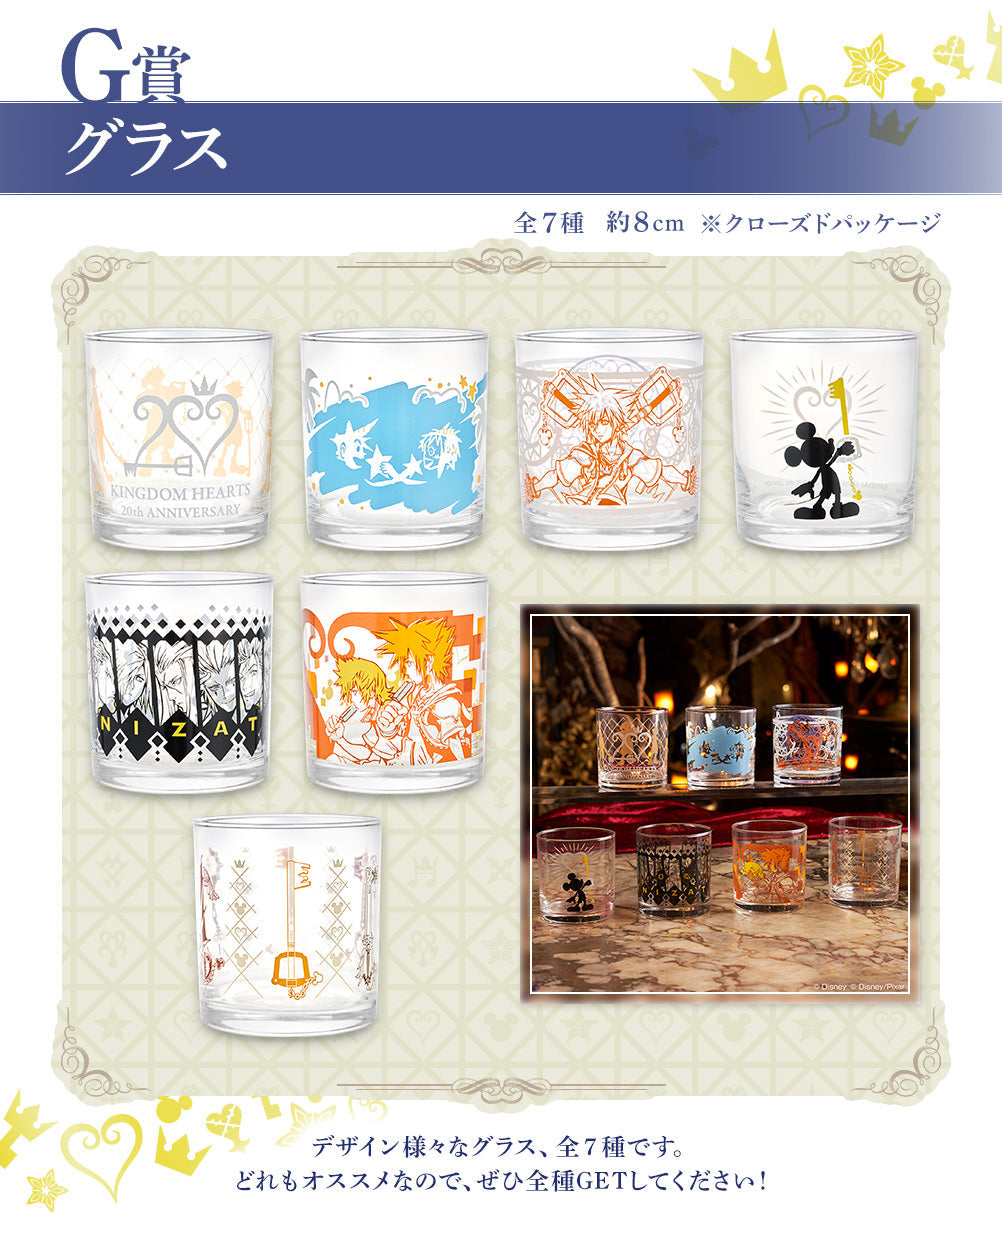 Ichiban Kuji Kingdom Hearts ~ 20th Anniversary ~-Bandai-Ace Cards &amp; Collectibles